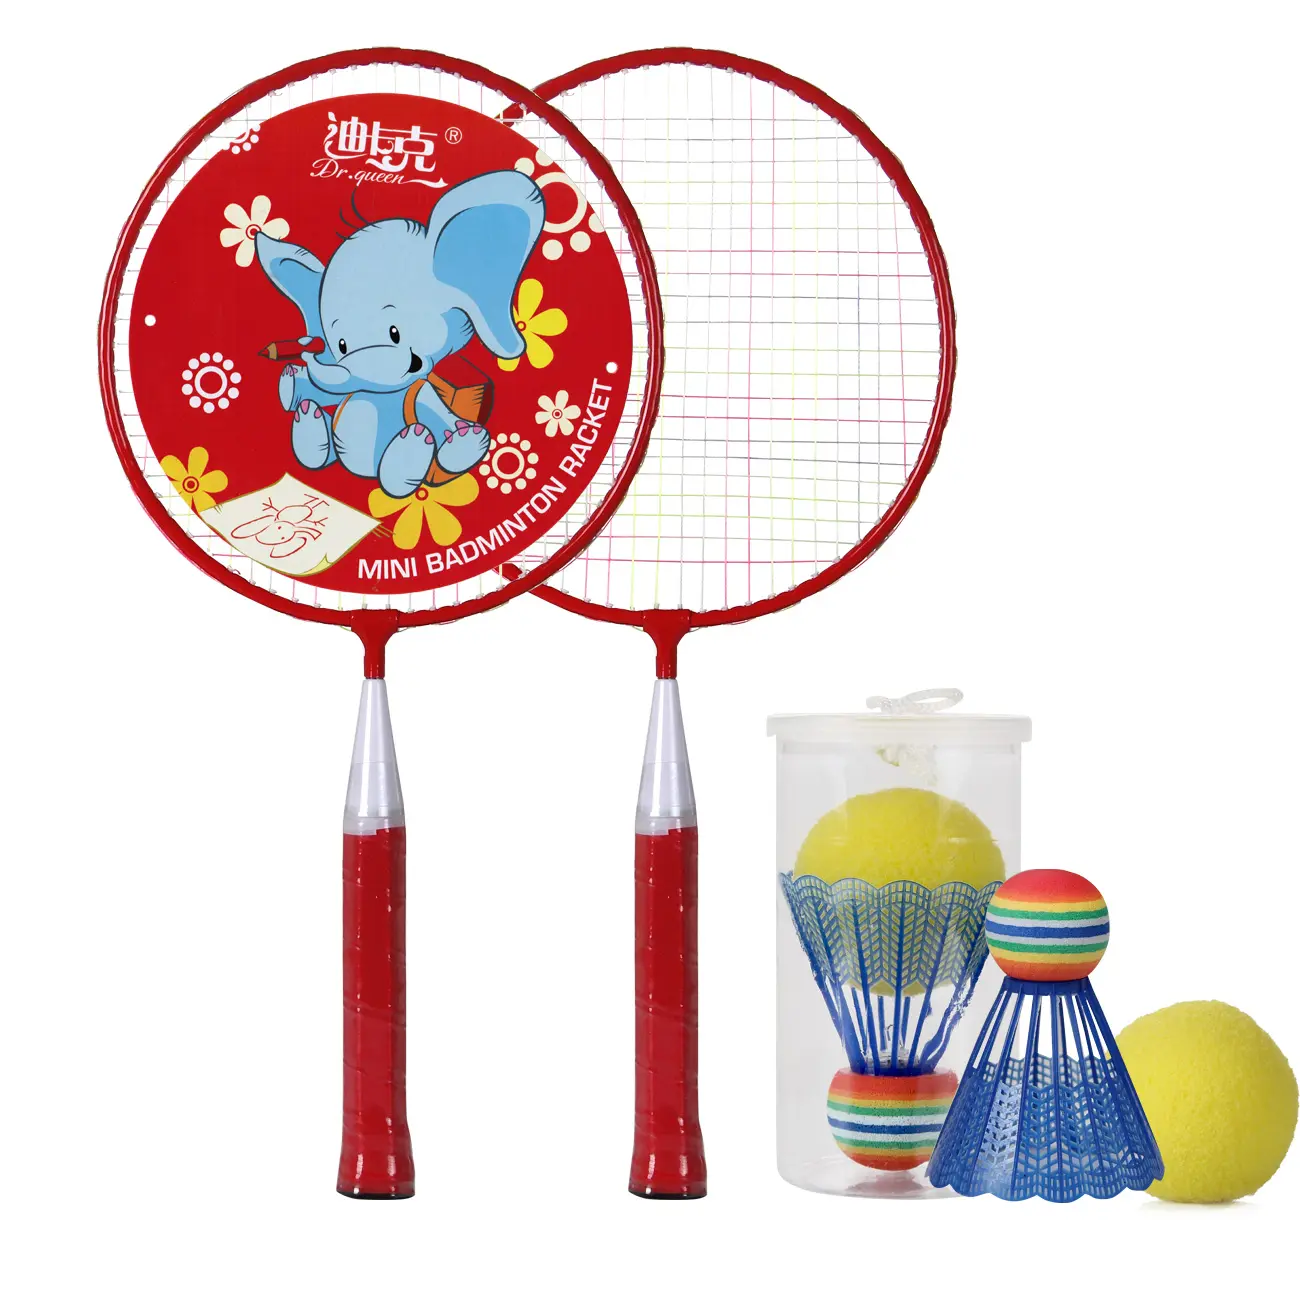 DECOQ-ensemble de raquette de Badminton de bonne qualité pour enfants, jeu de sport pour enfants